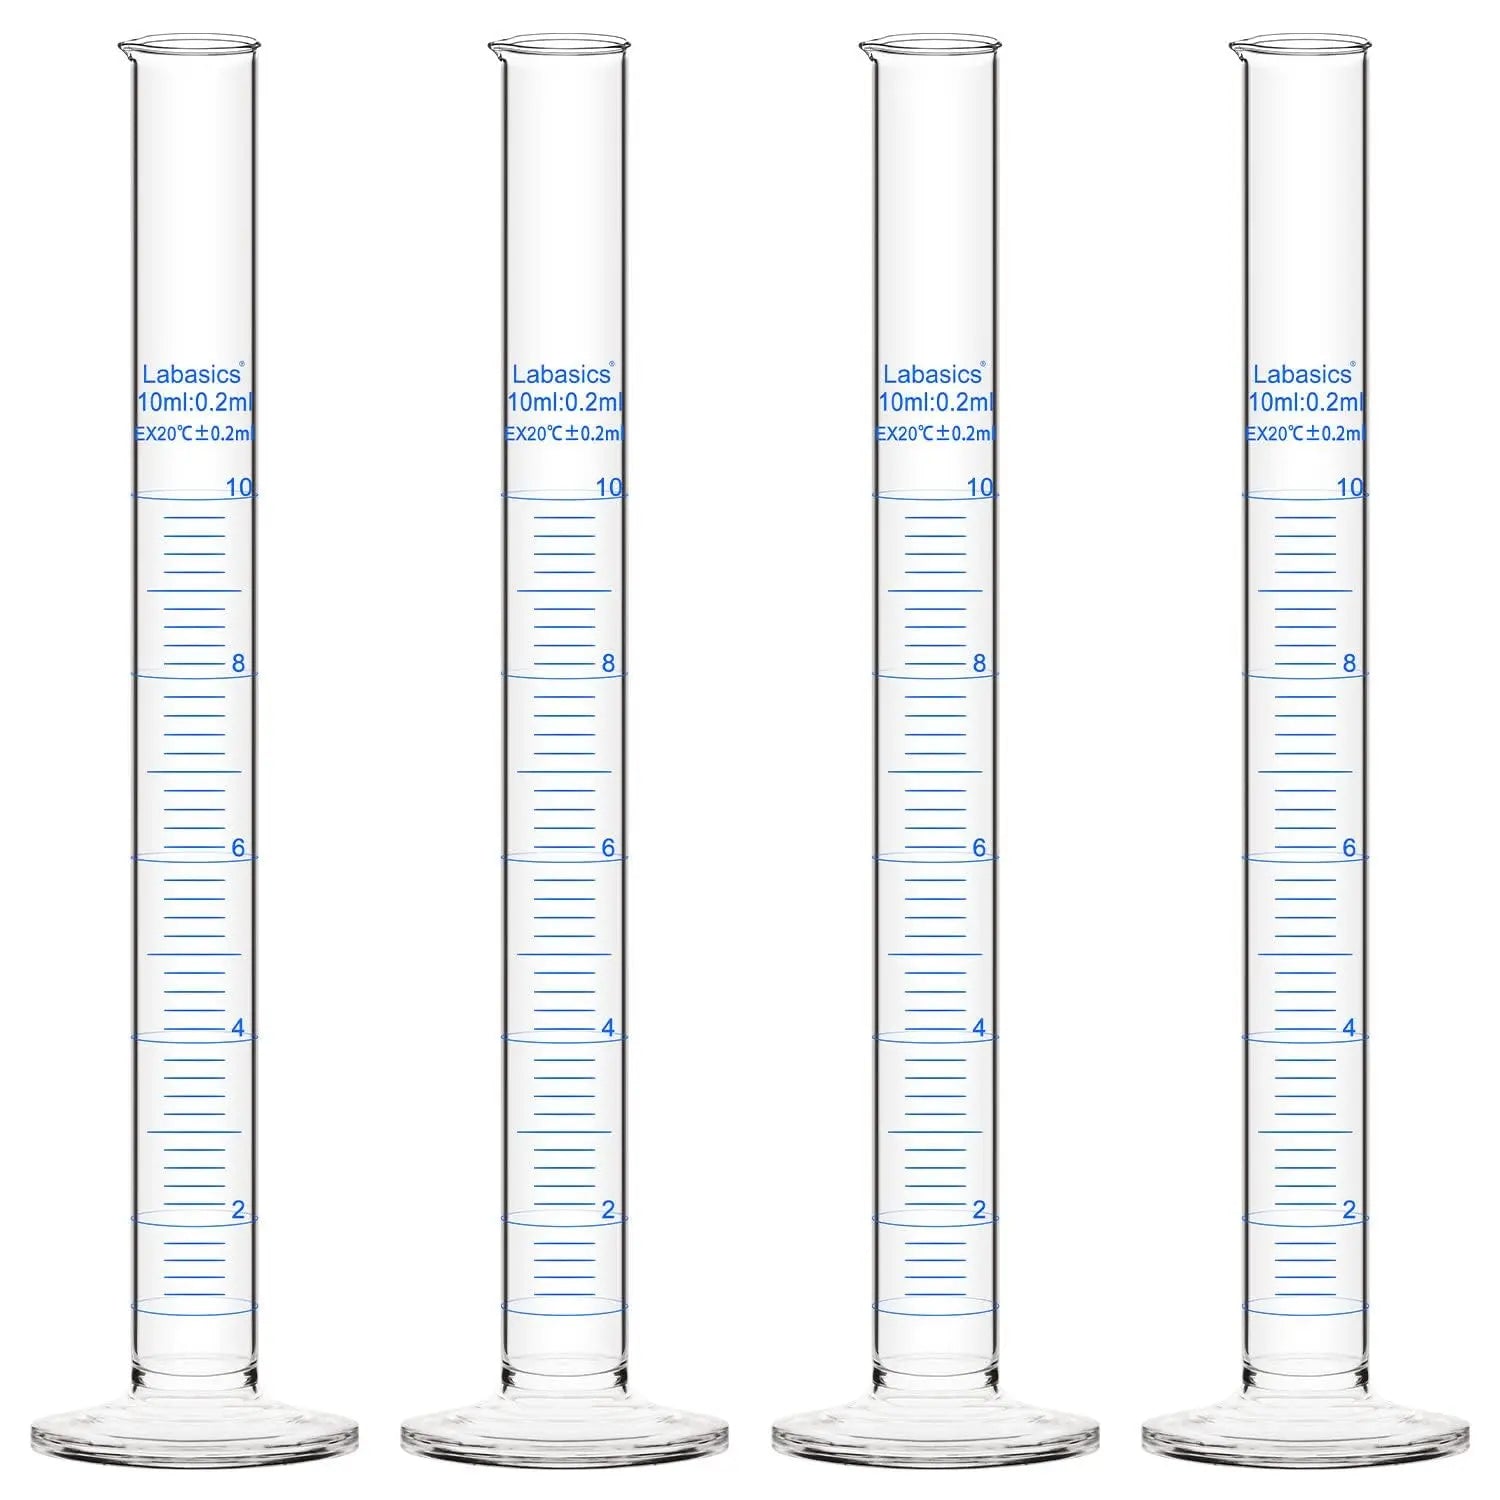 Measuring Cylinder,10-250 mL, 4 Packs